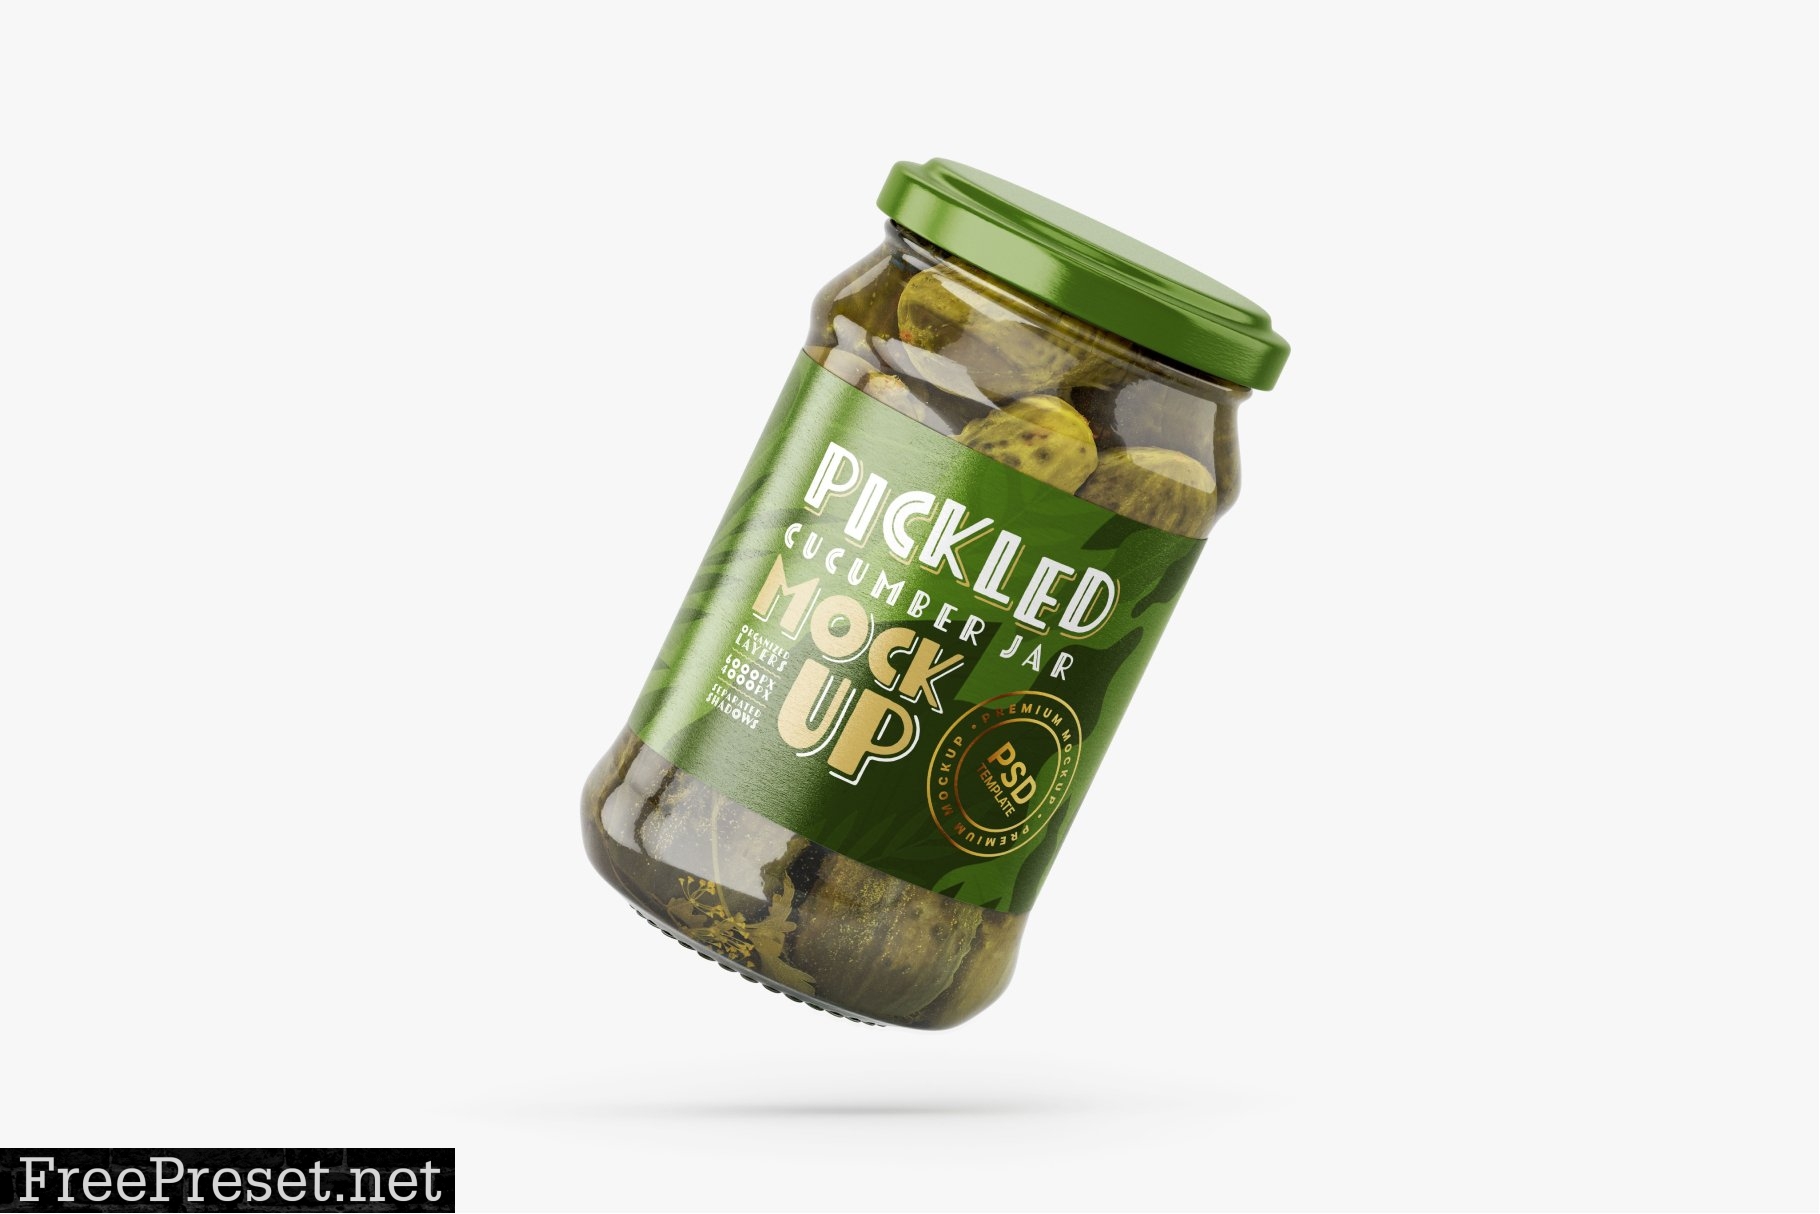 Pickled Cucumber Jar Mockup Set 5940784